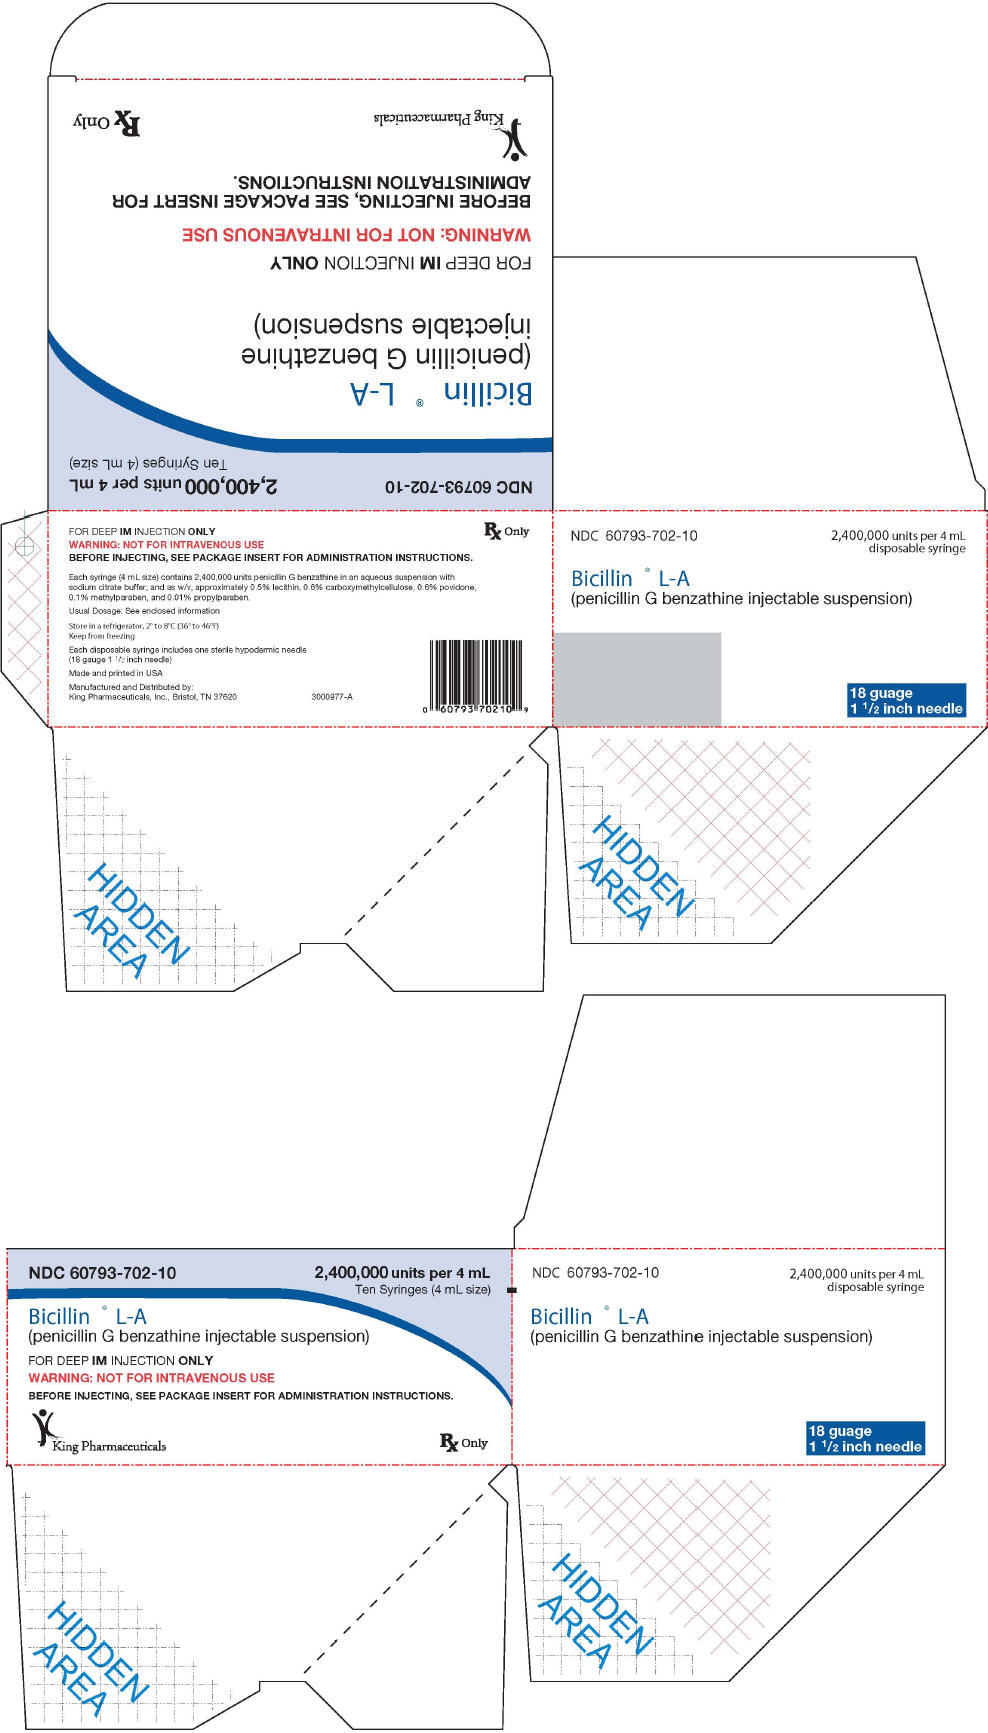 PRINCIPAL DISPLAY PANEL - 4 mL Syringe Carton